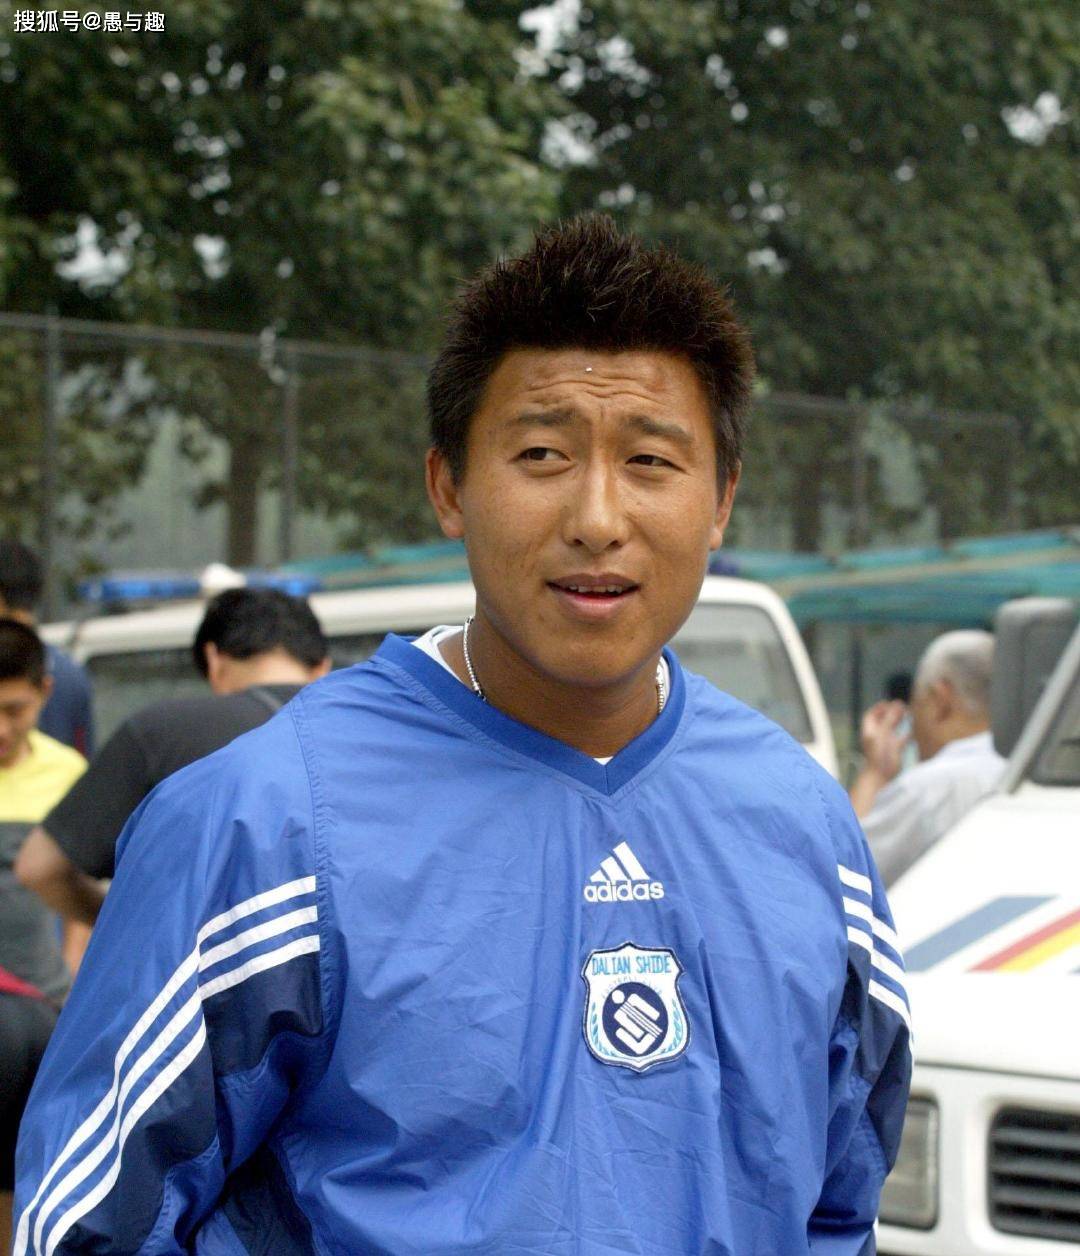 张恩华1973年出生,1996年入选国家队,为米卢带领的国足征战2002年韩